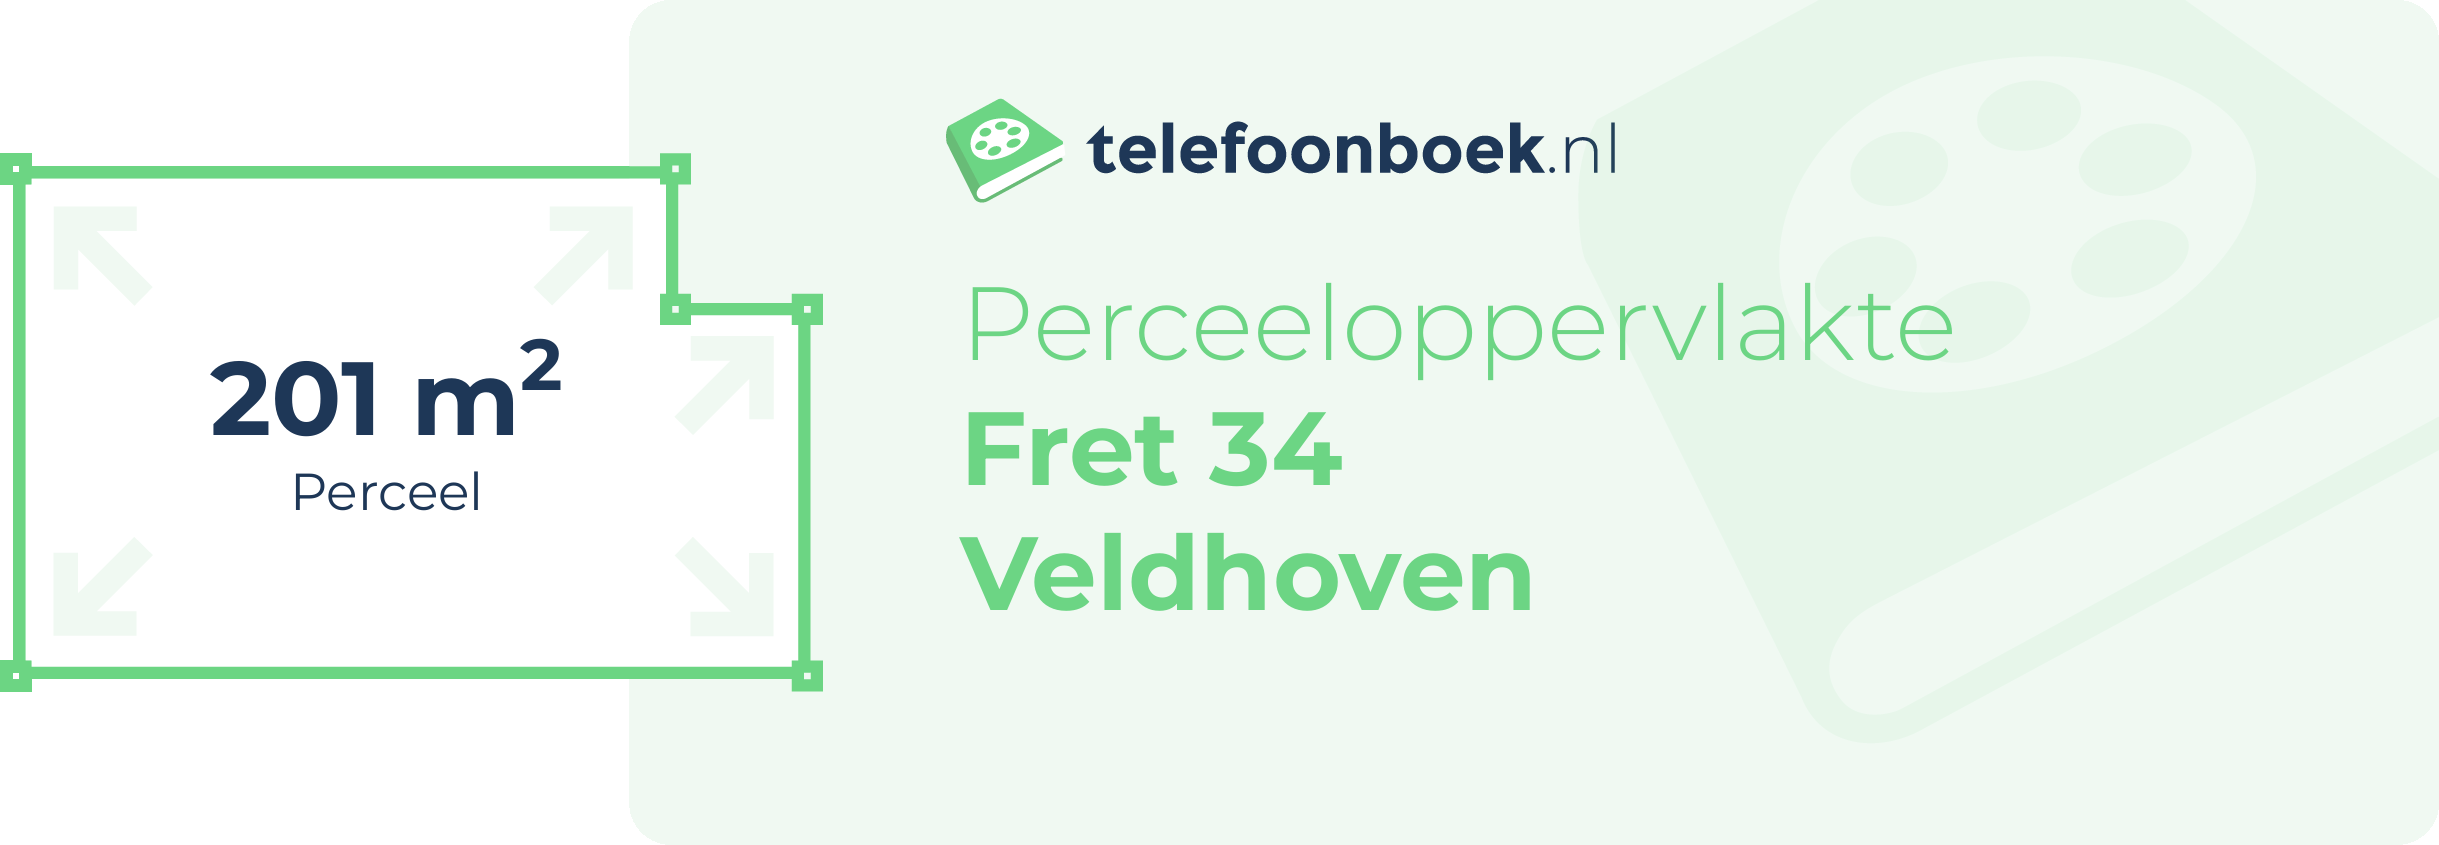 Perceeloppervlakte Fret 34 Veldhoven